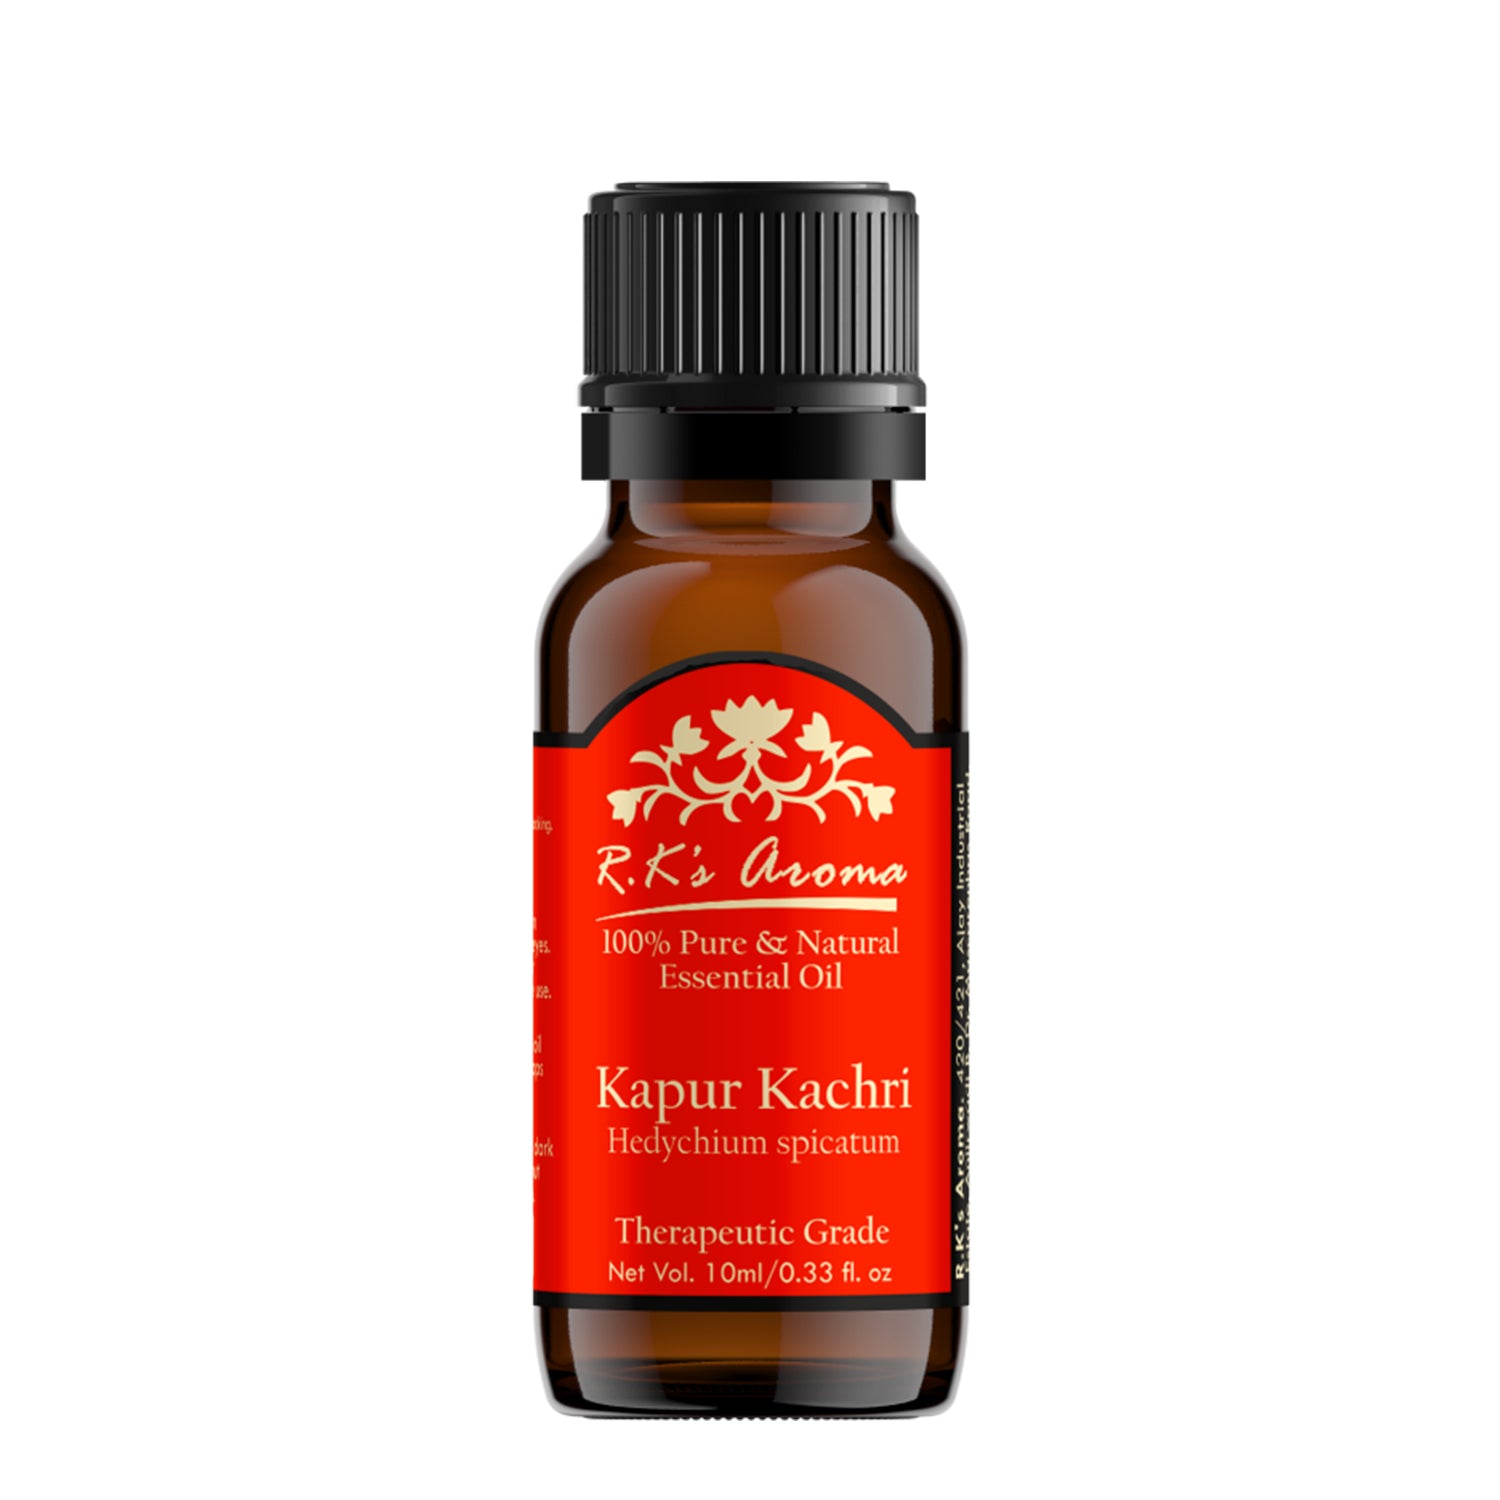 Kapur Kachri Essential Oil (Hedychium Spicatum)